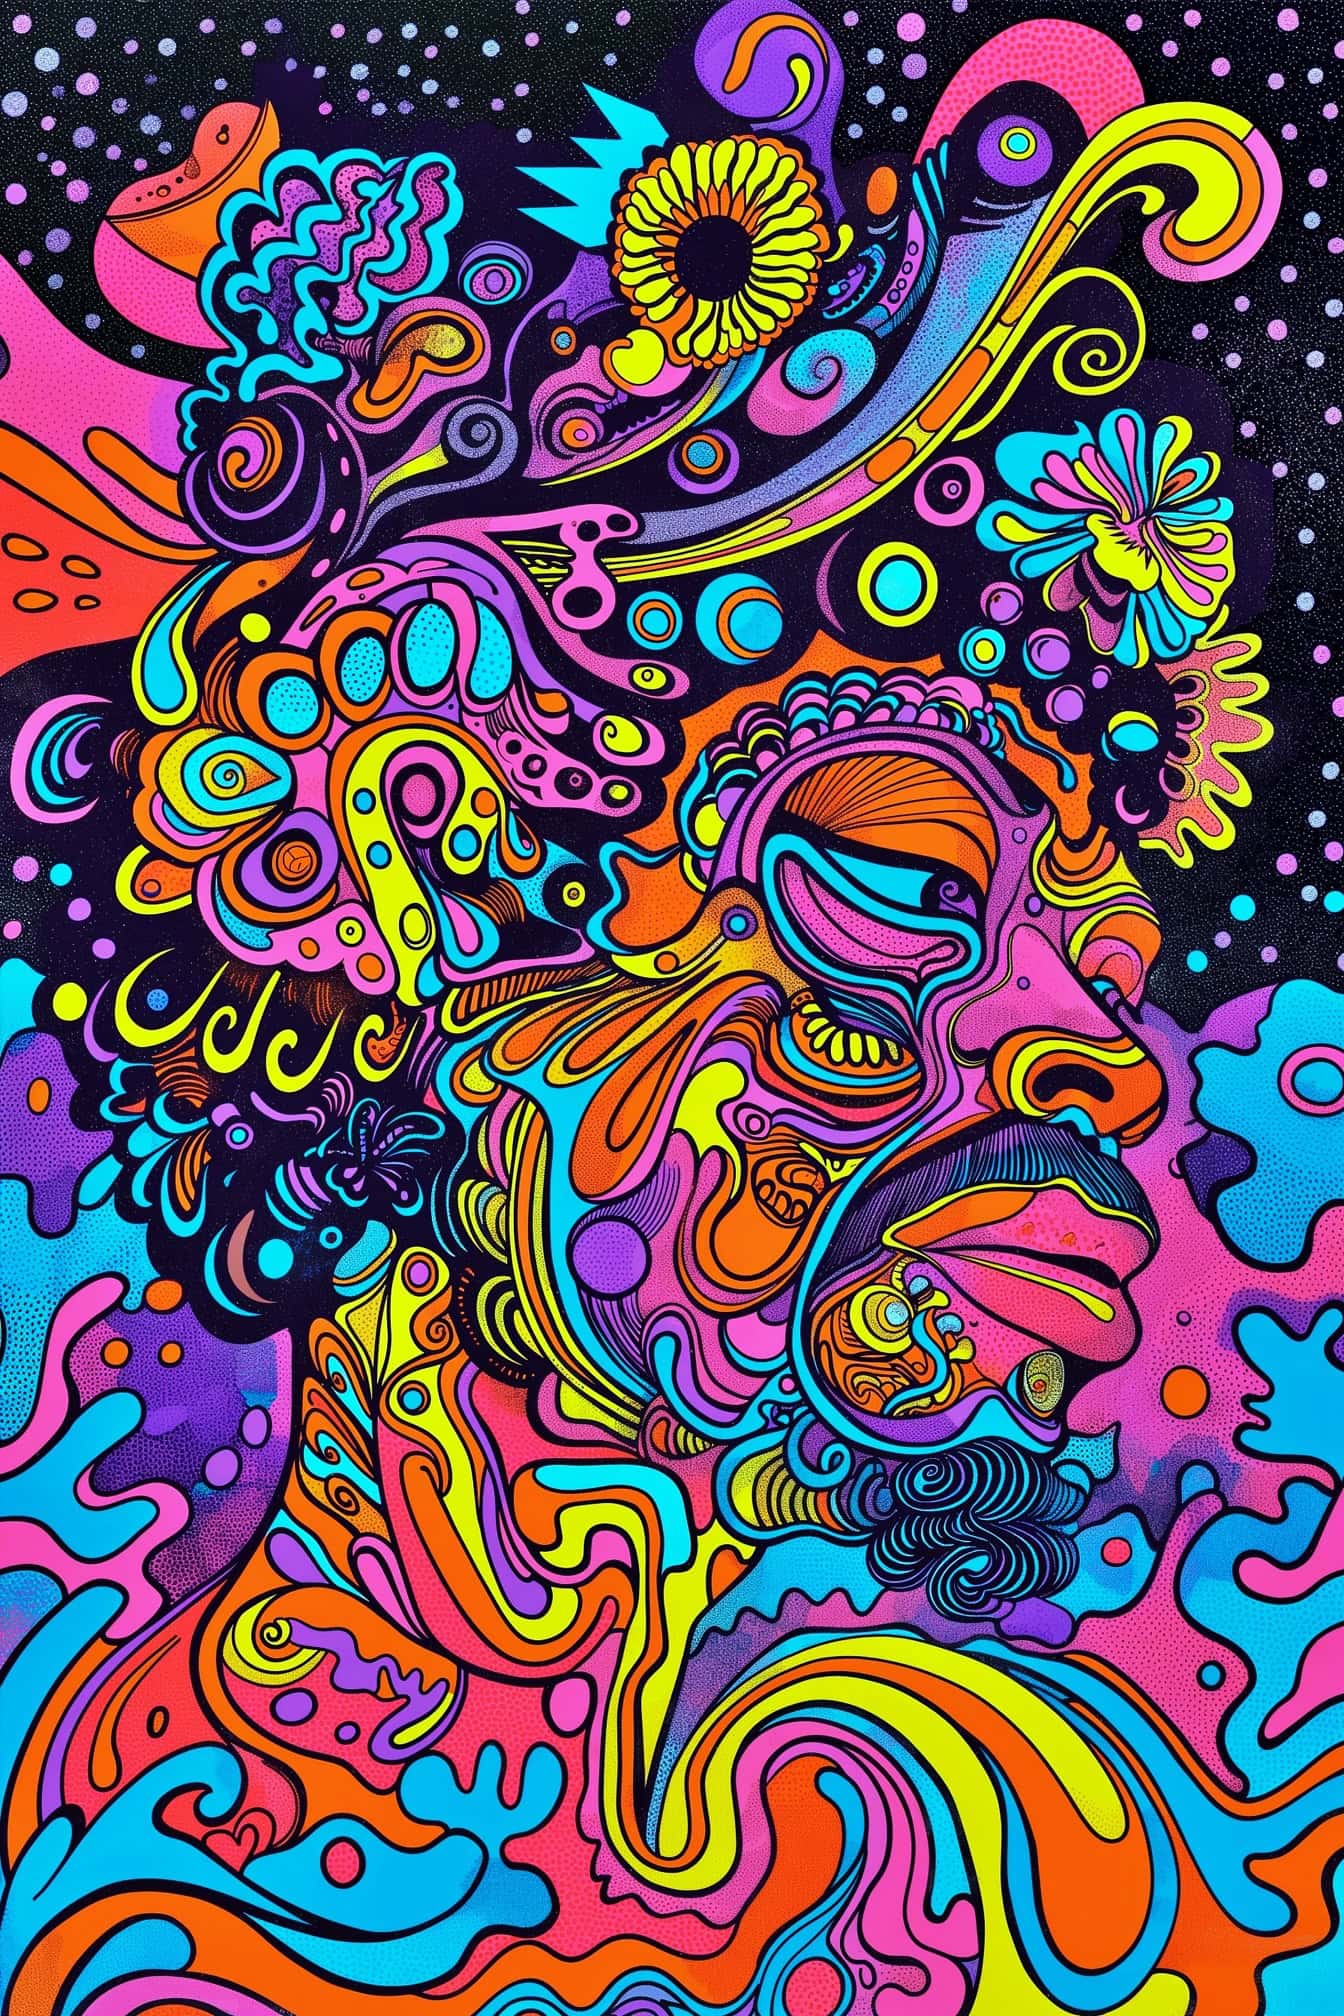 Tác phẩm nghệ thuật ảo giác trừu tượng đầy màu sắc của một người đàn ông theo phong cách nghệ thuật đại chúng